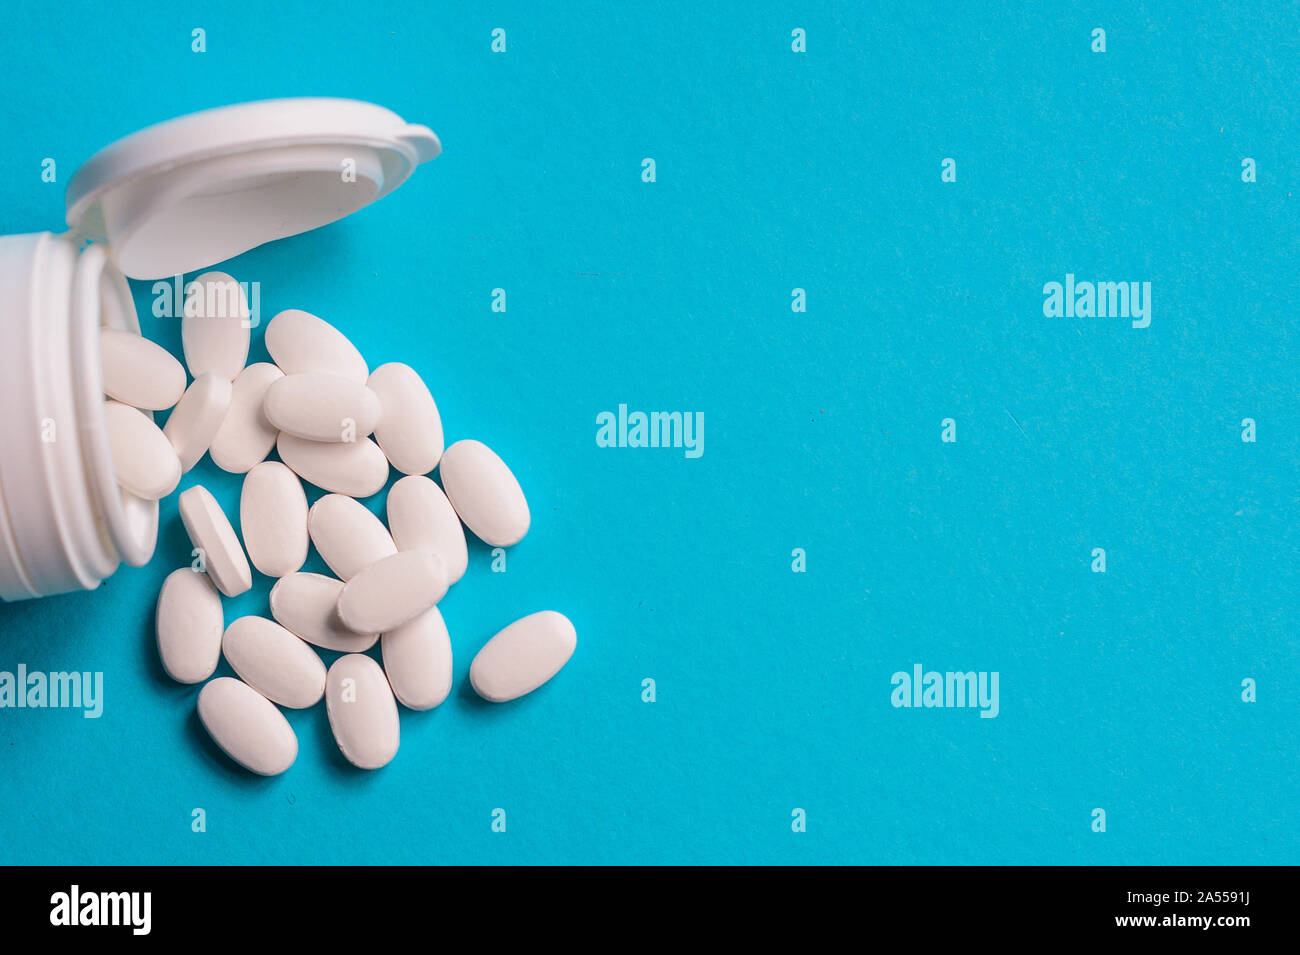 Pilules médical blanc sur fond bleu représentant le concept de soins de santé Banque D'Images